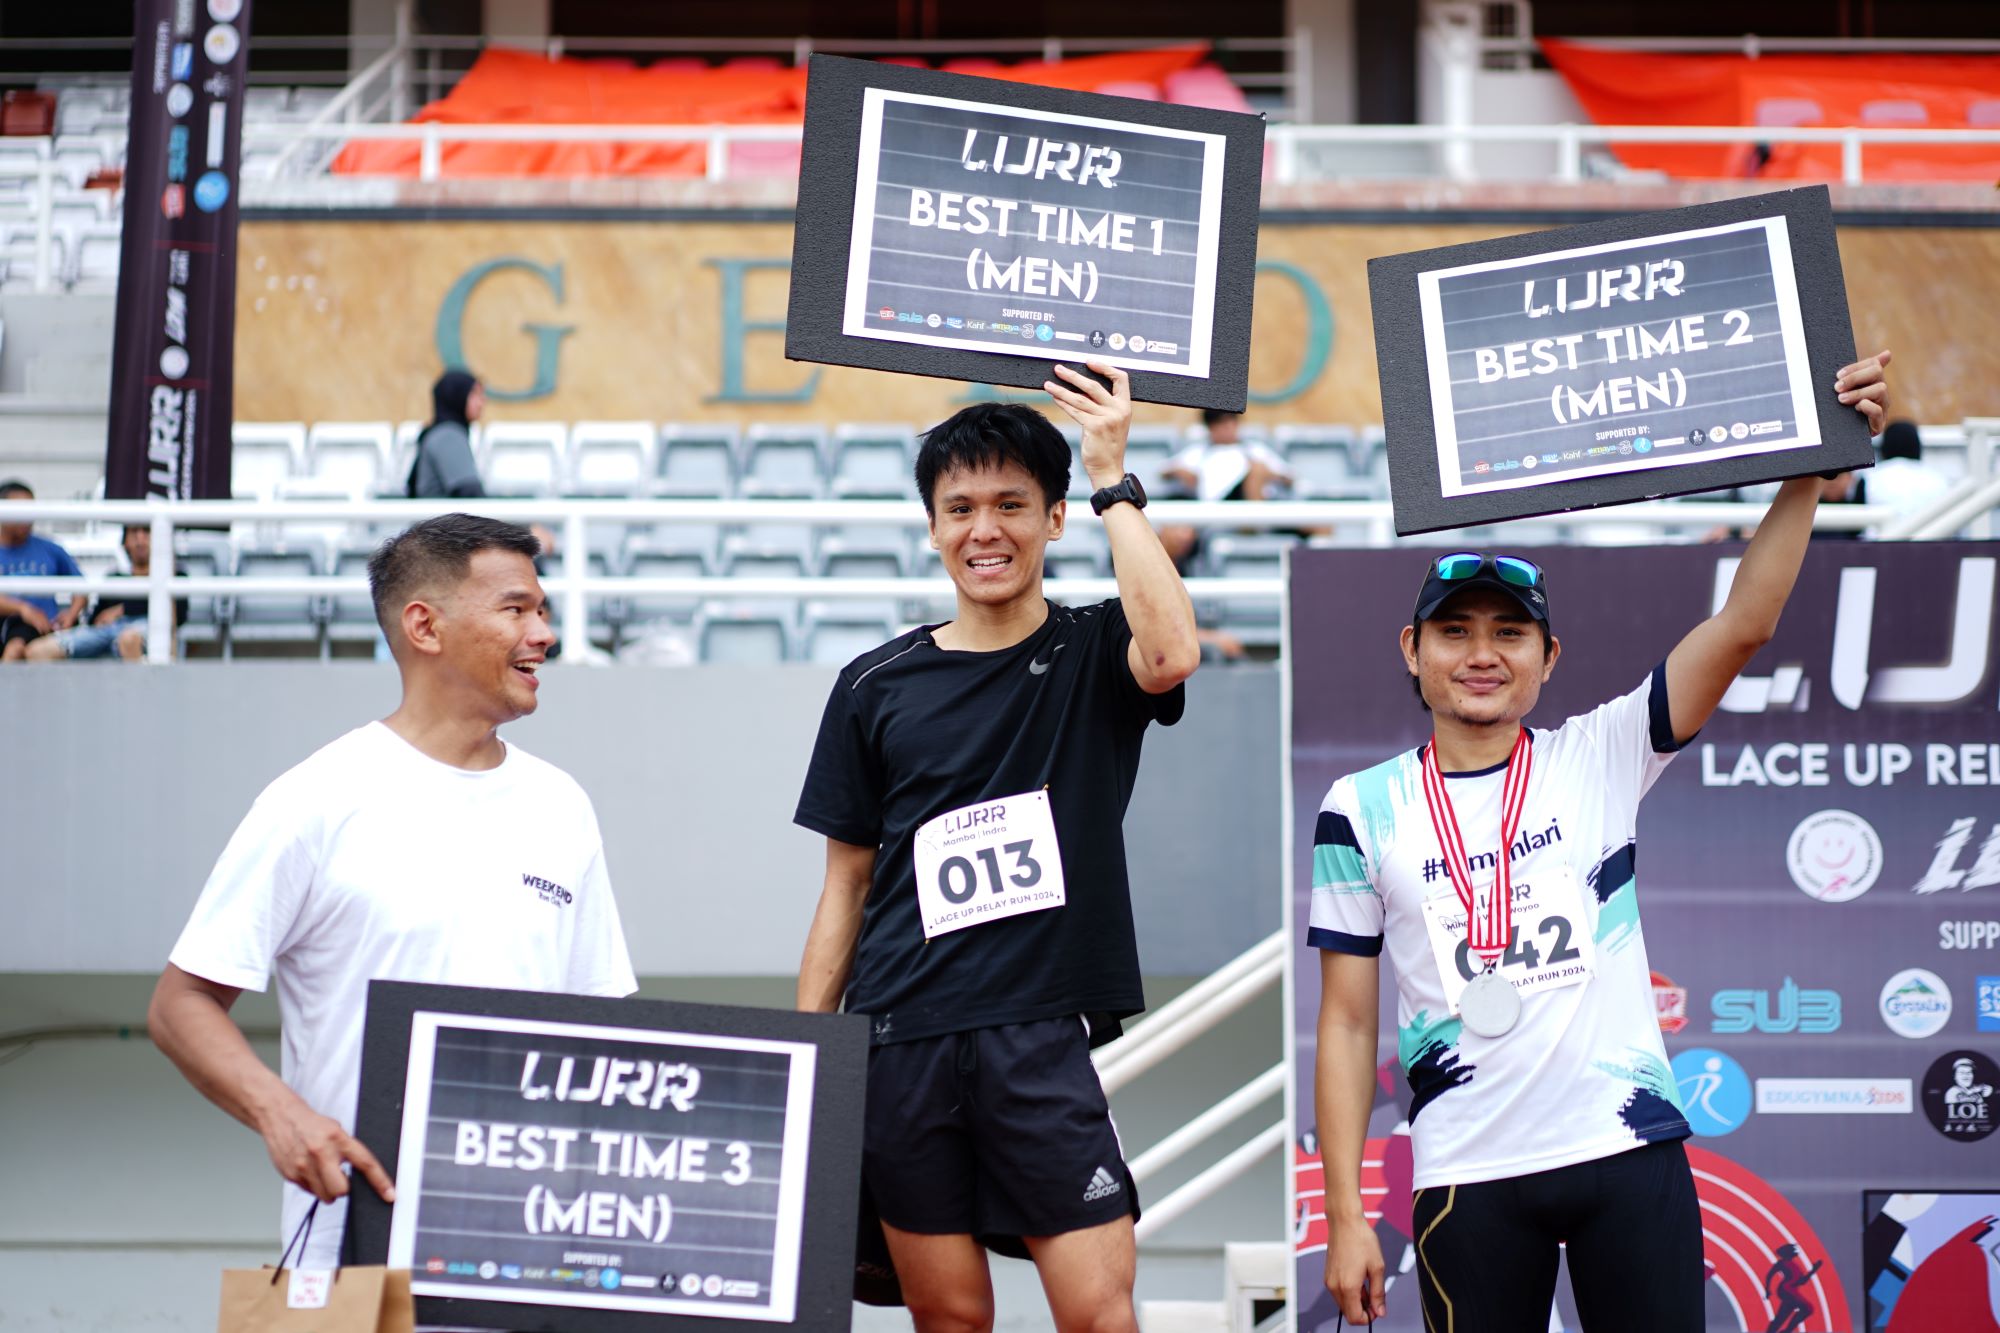 Lace Up Relay Run Sukses Tarik Minat Ratusan Runners di Palembang